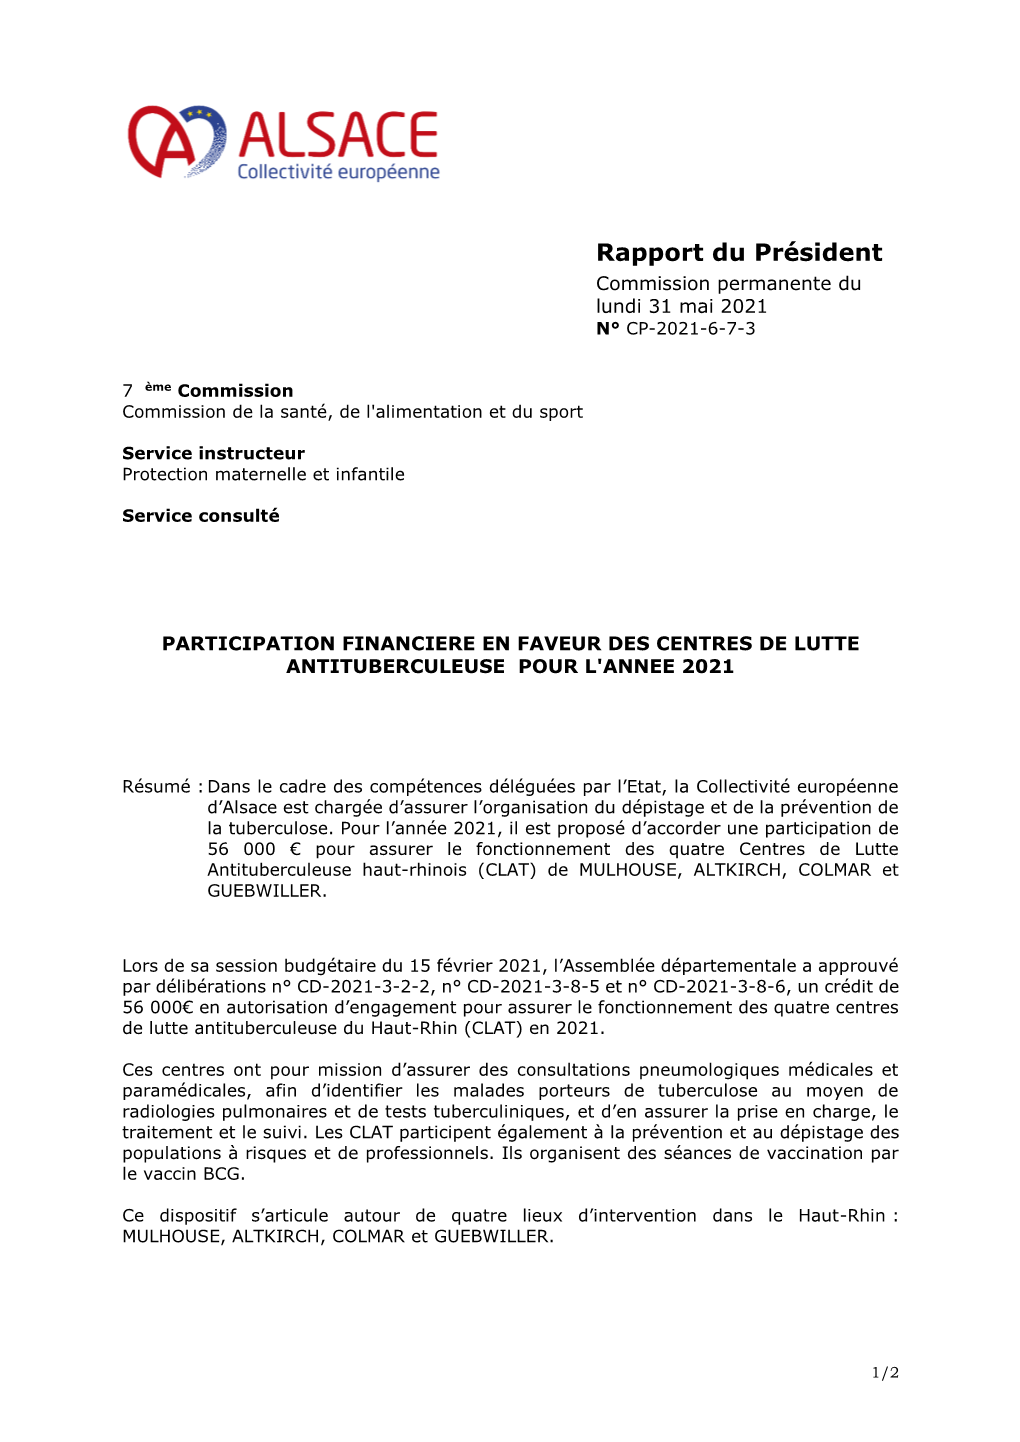 Rapport Du Président Commission Permanente Du Lundi 31 Mai 2021 N° CP-2021-6-7-3